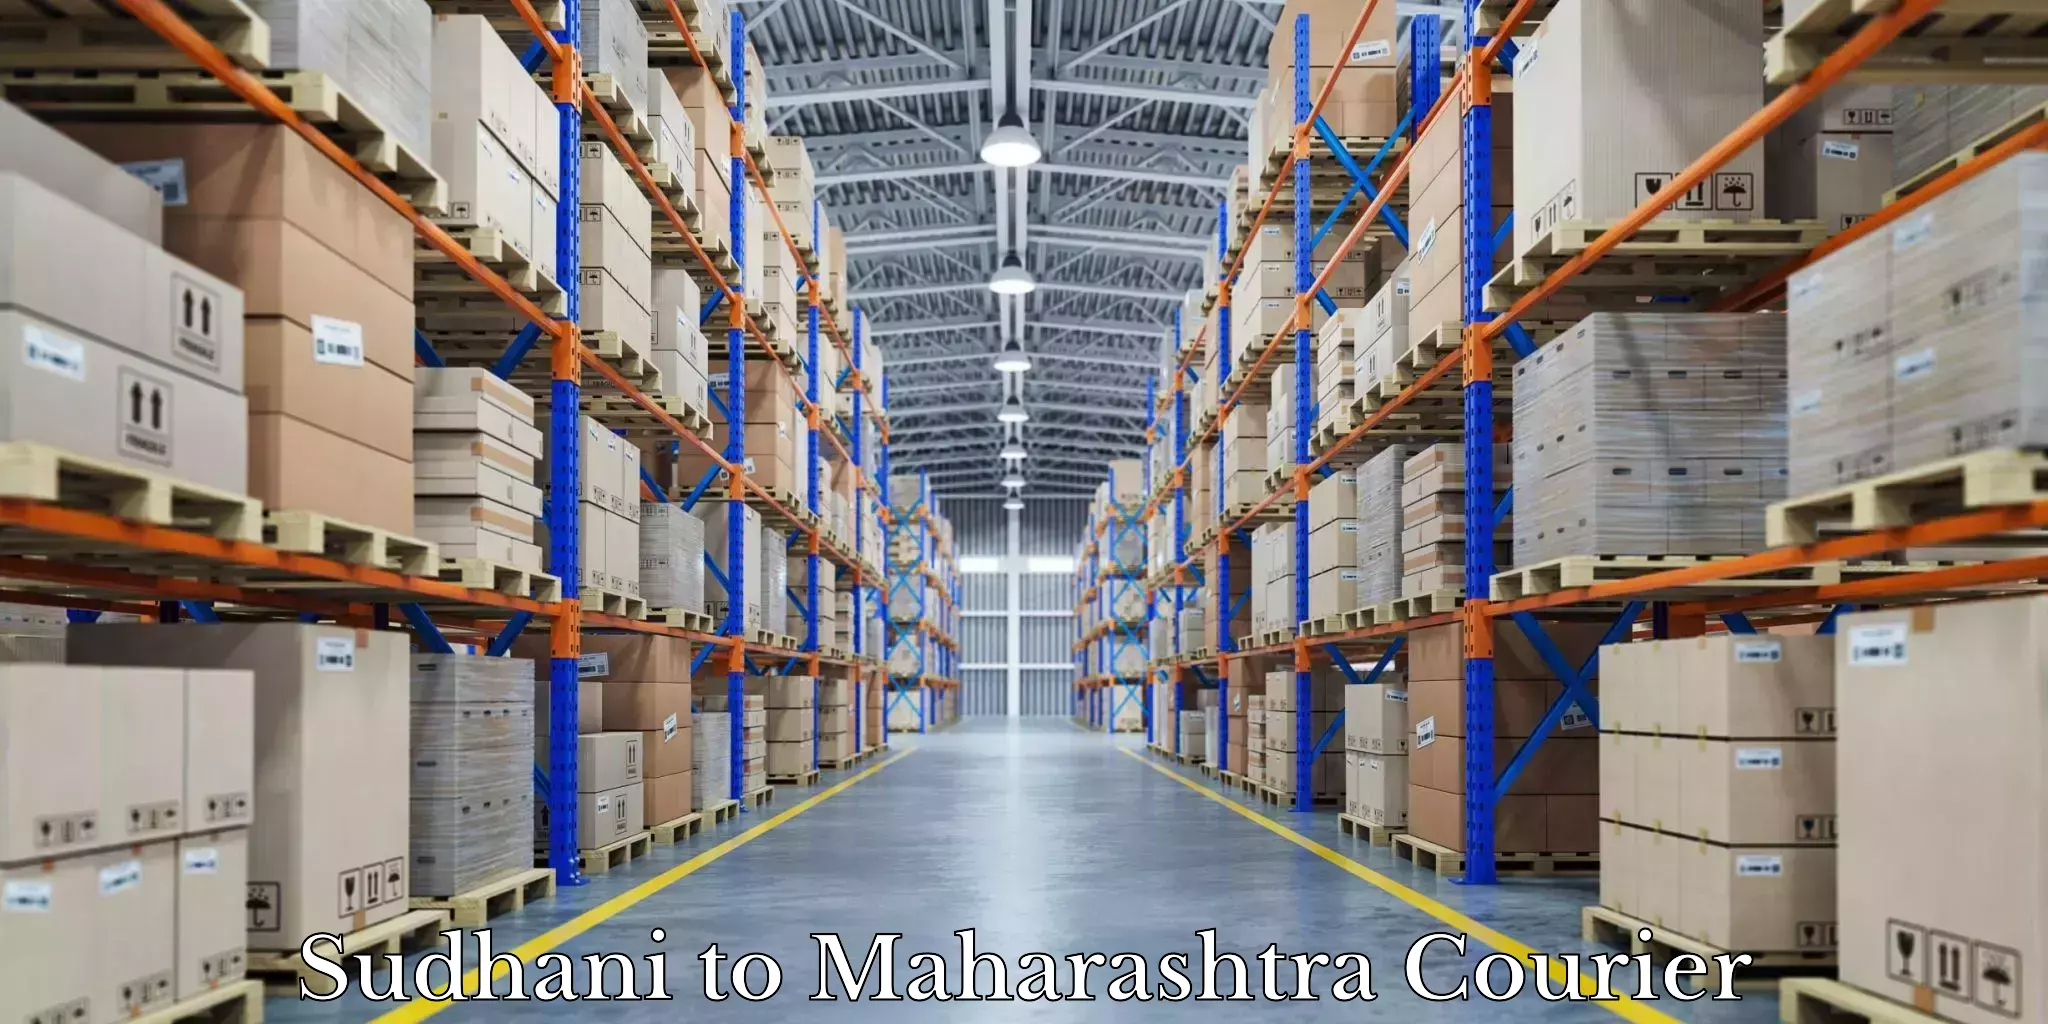 Furniture moving plans Sudhani to Maharashtra